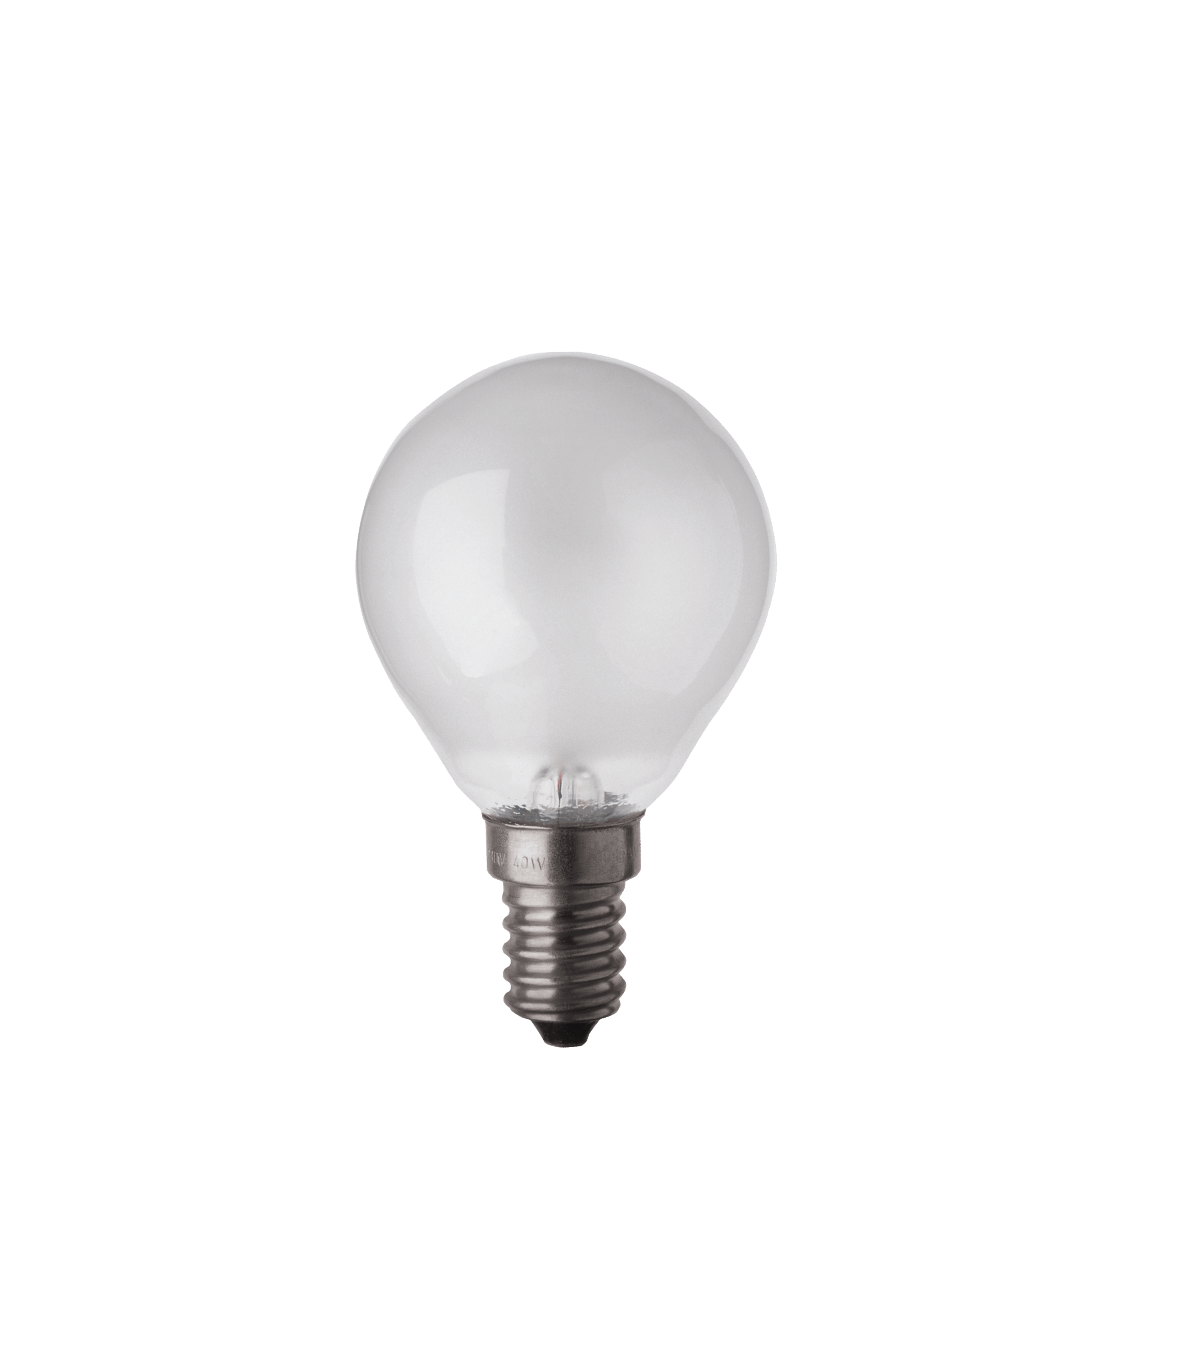 Ampoule incandescente sphérique 60W E14 230V Blanc chaud 700lm dépolie